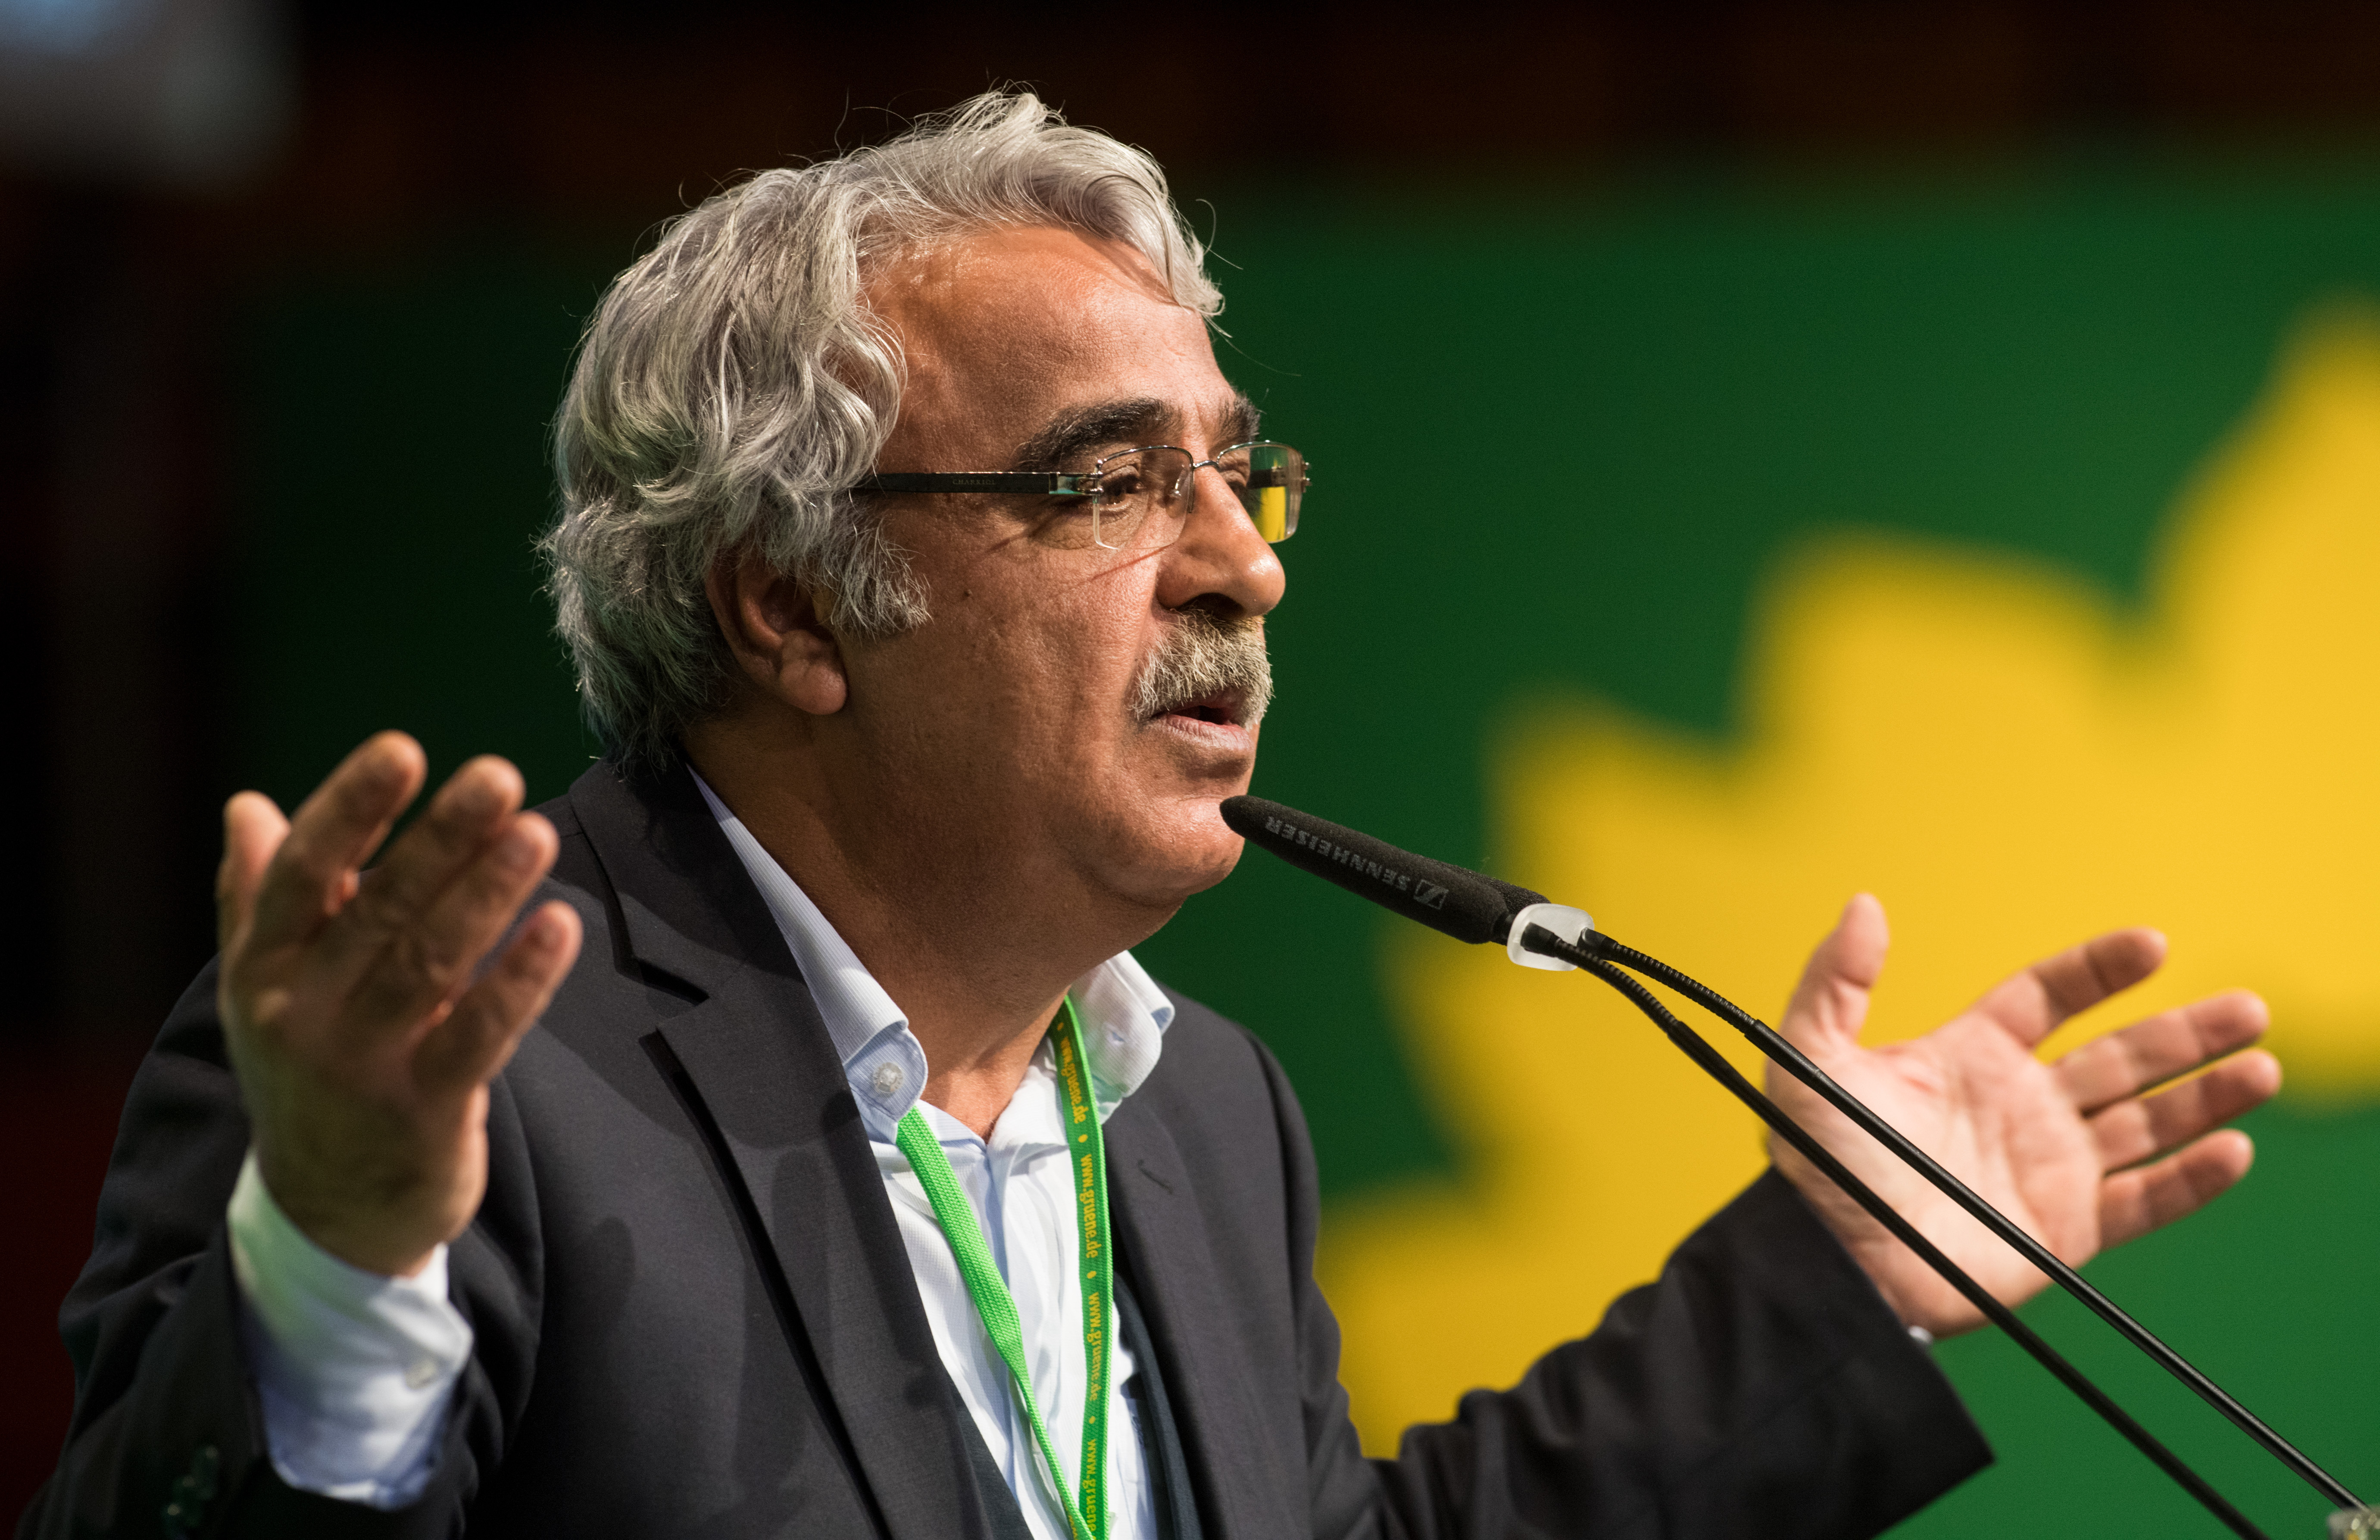 Der Co-Vorsitzende der prokurdischen Partei HDP, Sancar, bei einer Rede auf dem Parteitag der Grünen im Jahr 2016 | picture alliance / dpa